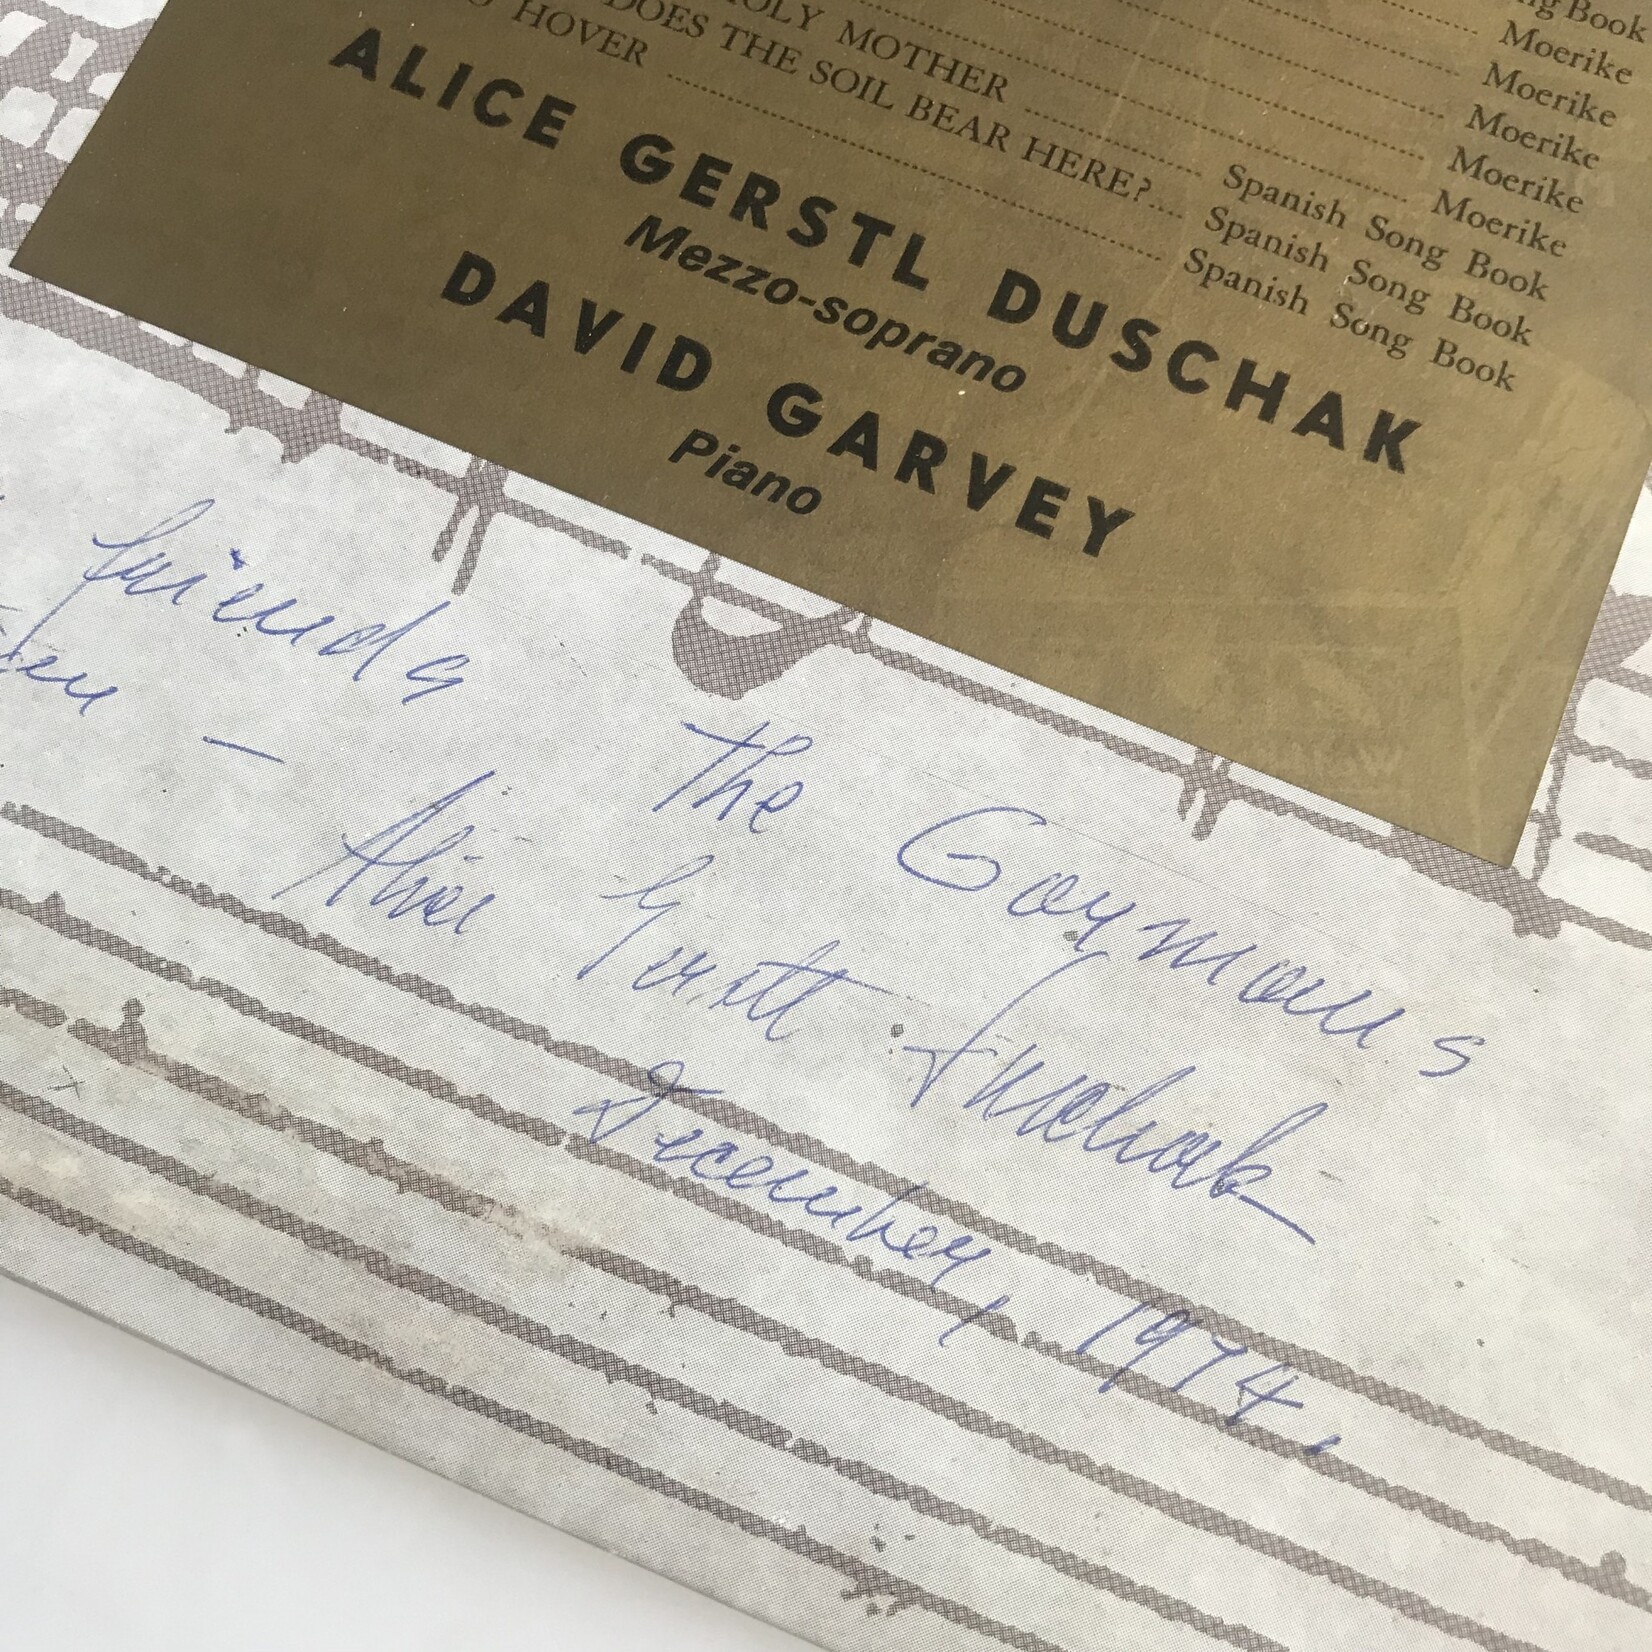 Alice Gerstl Duschak, David Garvey - Hugo Wolf Recital - Vinyl LP (USED)